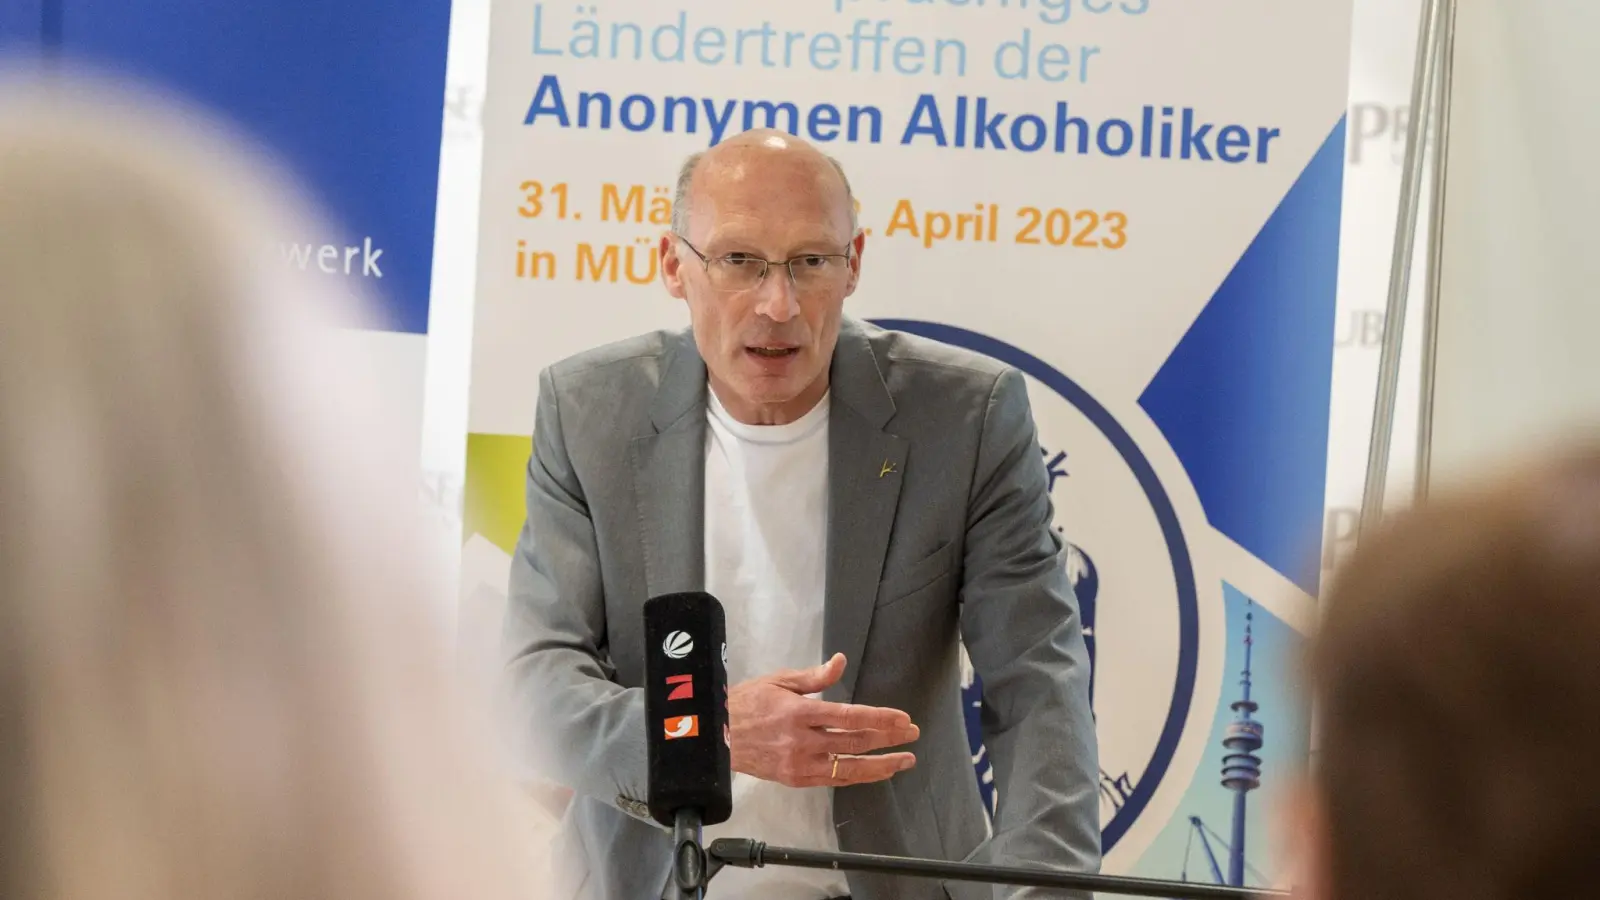 Der Arzt und Suchtmediziner Markus Backmund bei der Pressekonferenz zum 70-jährigen Bestehen der Anonymen Alkoholiker (AA). (Foto: Peter Kneffel/dpa)